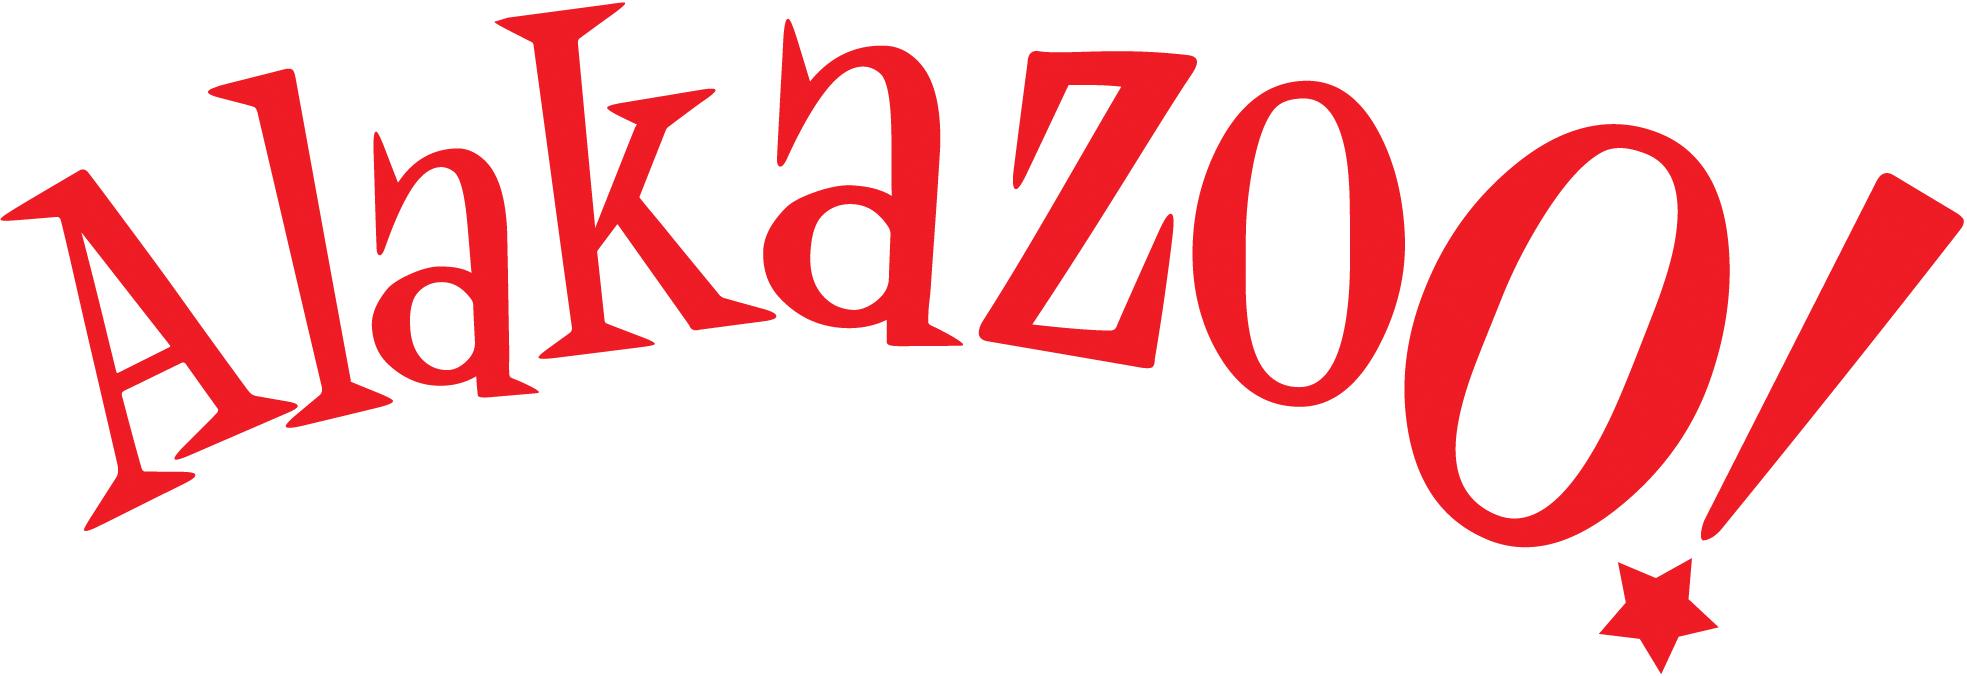 Coleção Alakazoo Verão 2022 – Fotos, Modelos, Tendências e Loja virtual